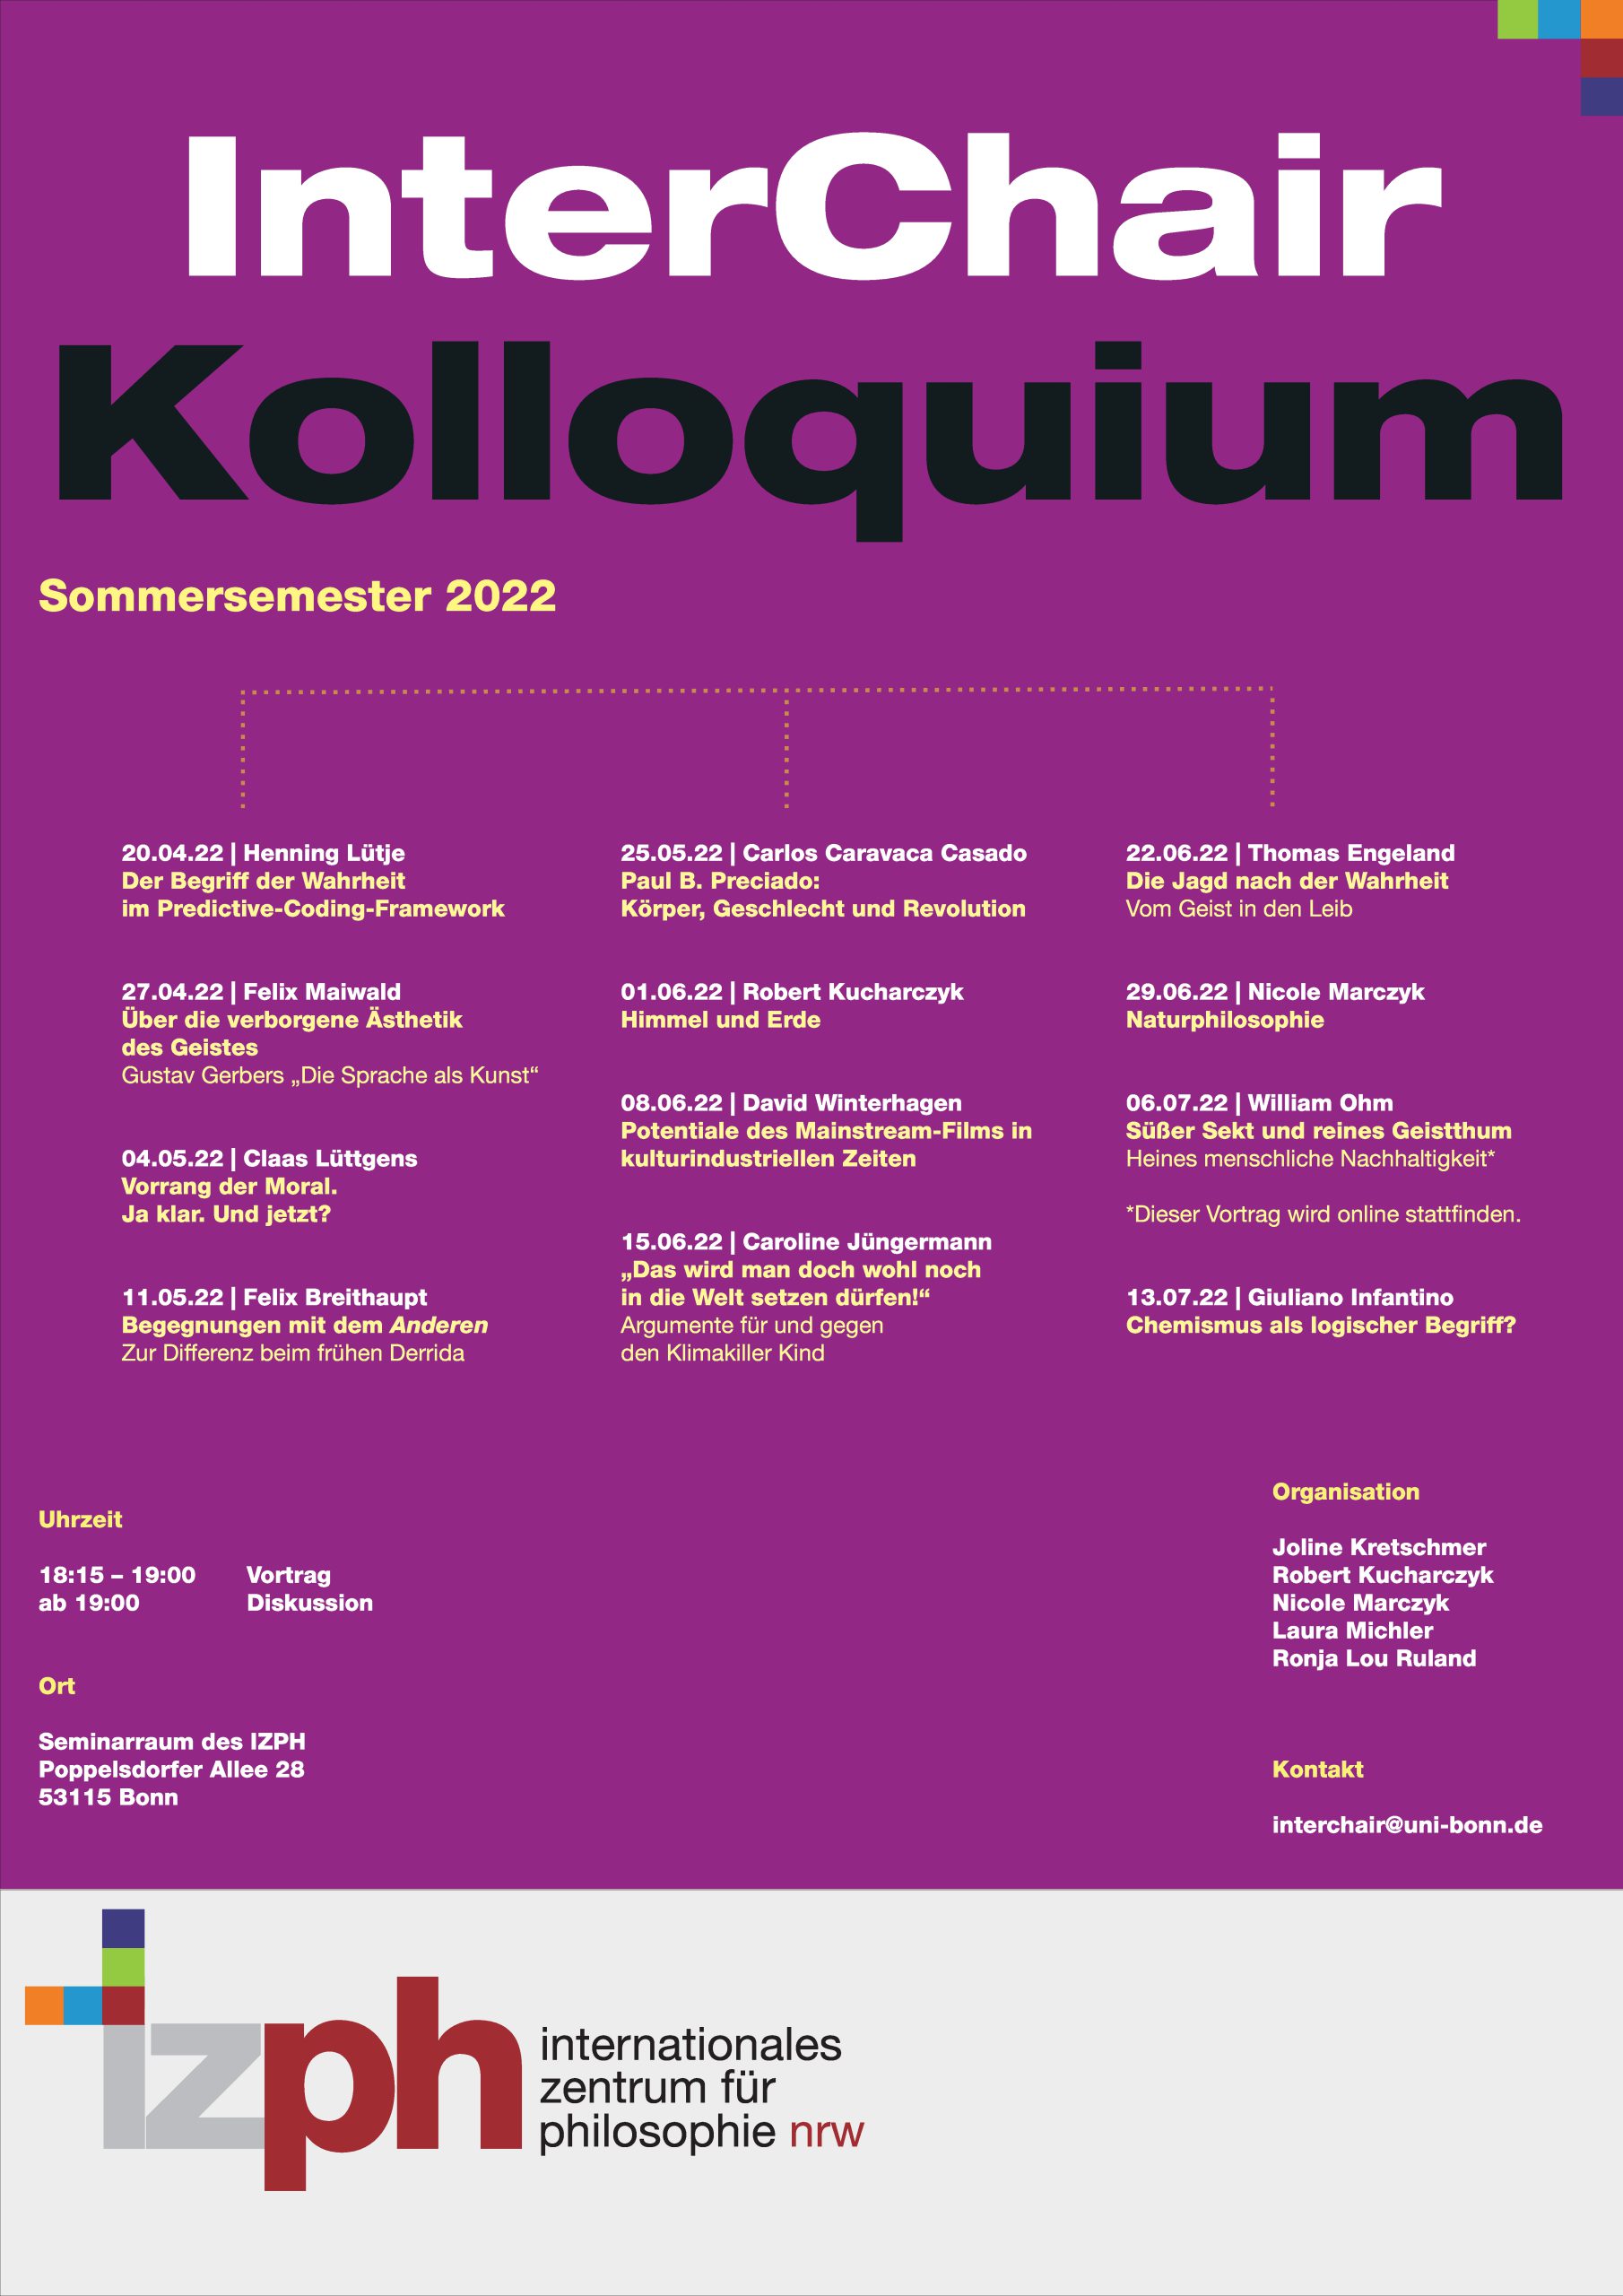 InterChair Kolloquium Sommersemester 2022